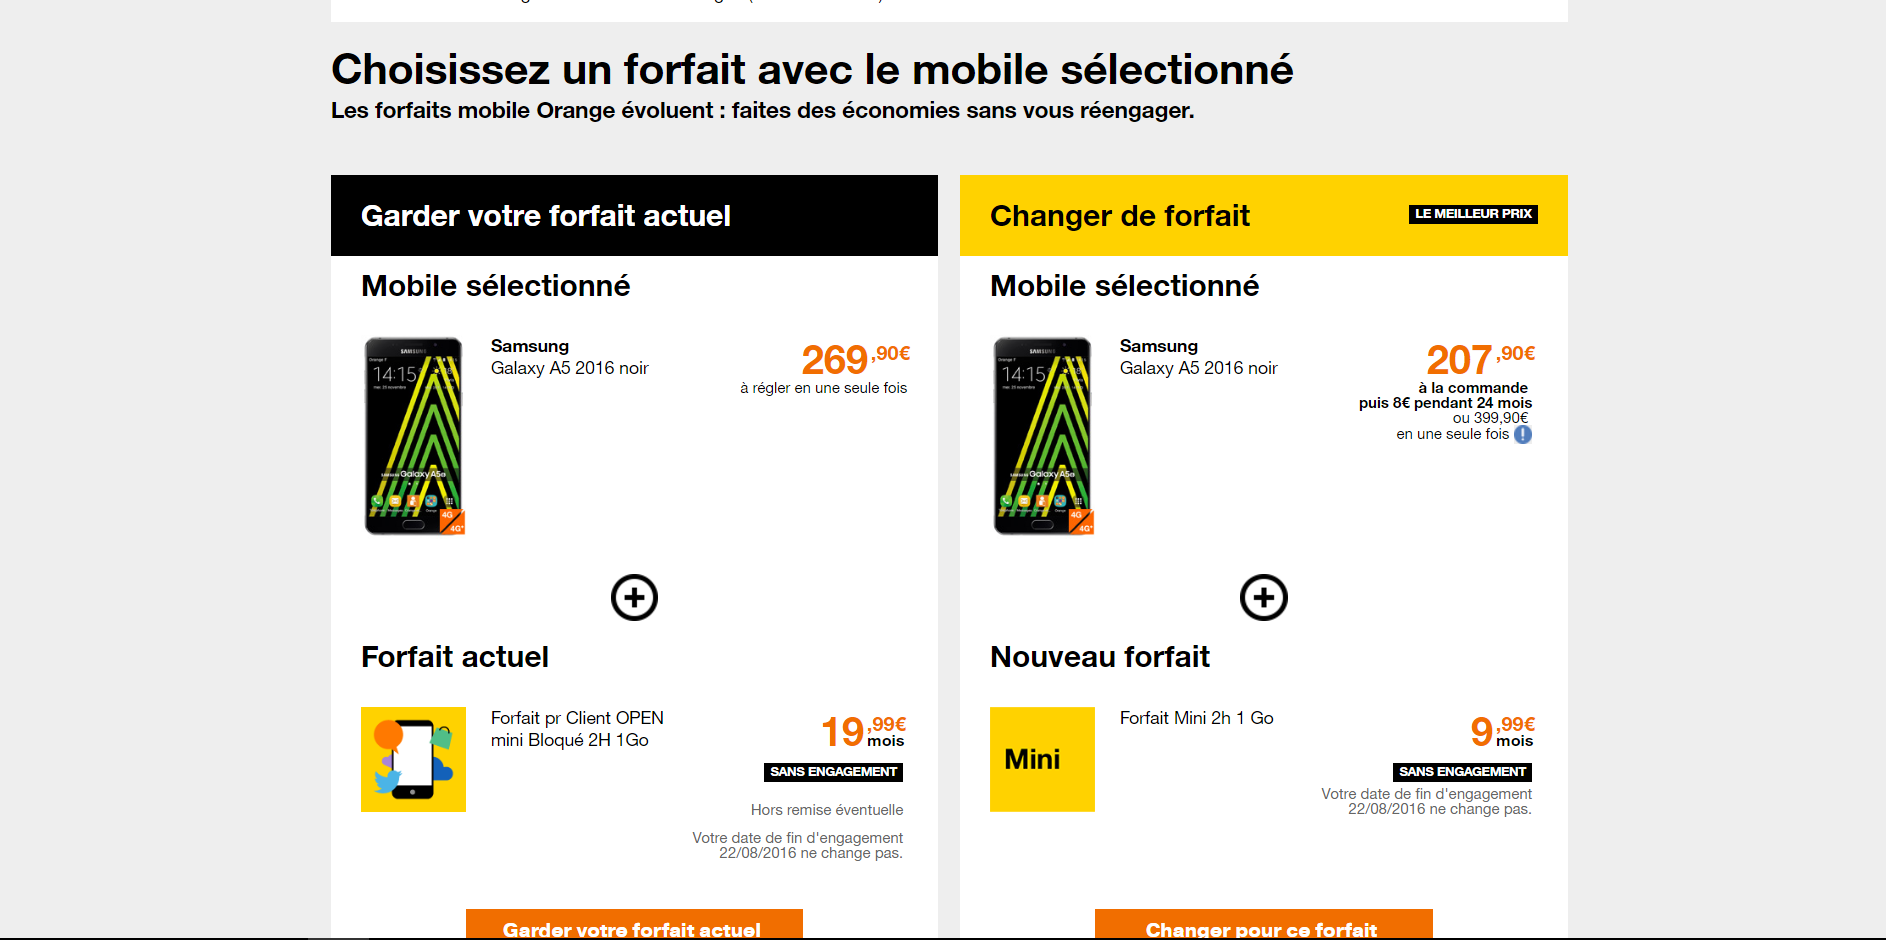 Changement de mobile via espace client - re-engage... - Communauté Orange